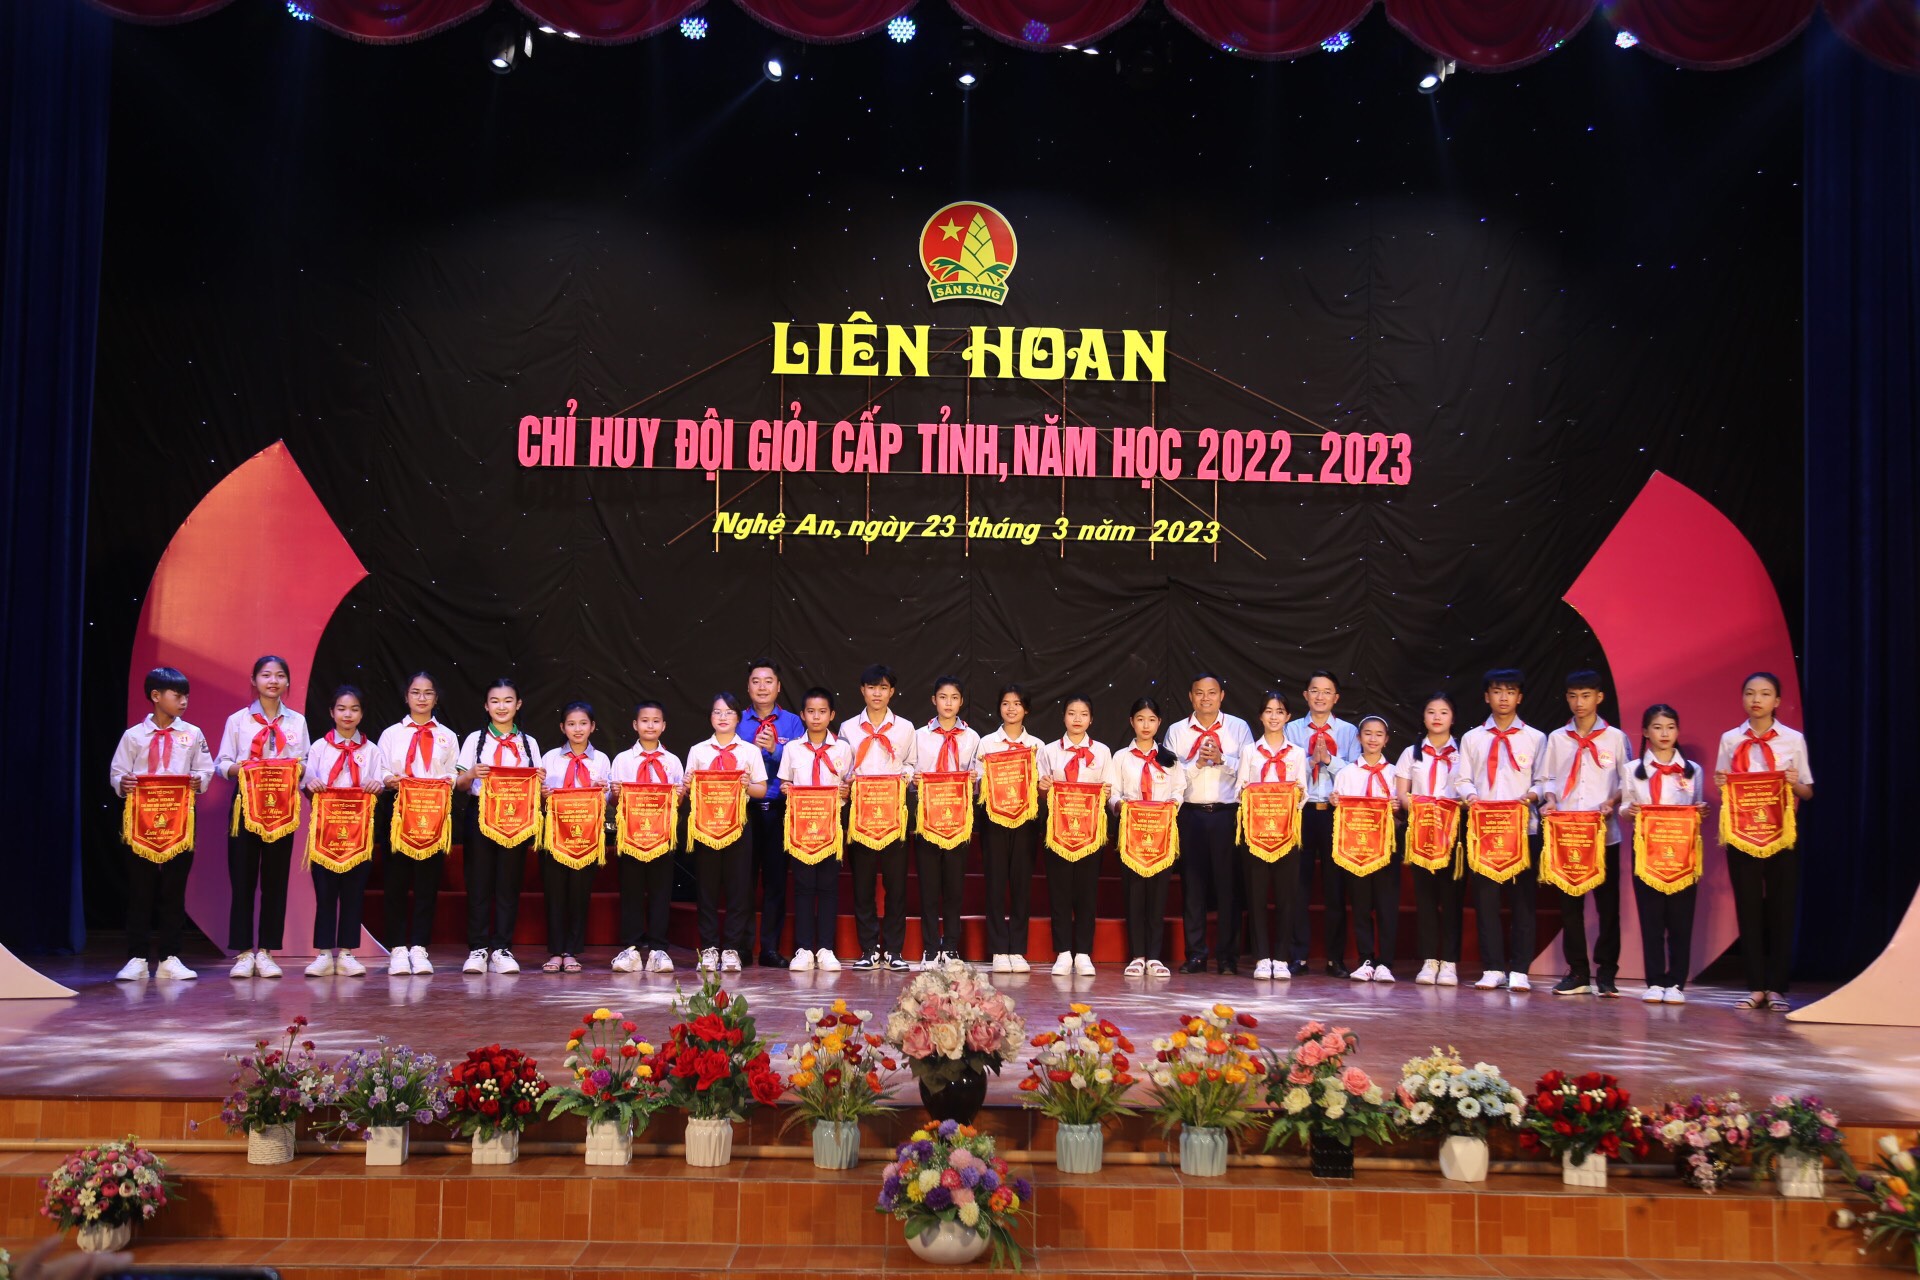 Nghệ An: 21 thí sinh tham dự Liên hoan Chỉ huy Đội giỏi cấp tỉnh, năm học 2022 - 2023